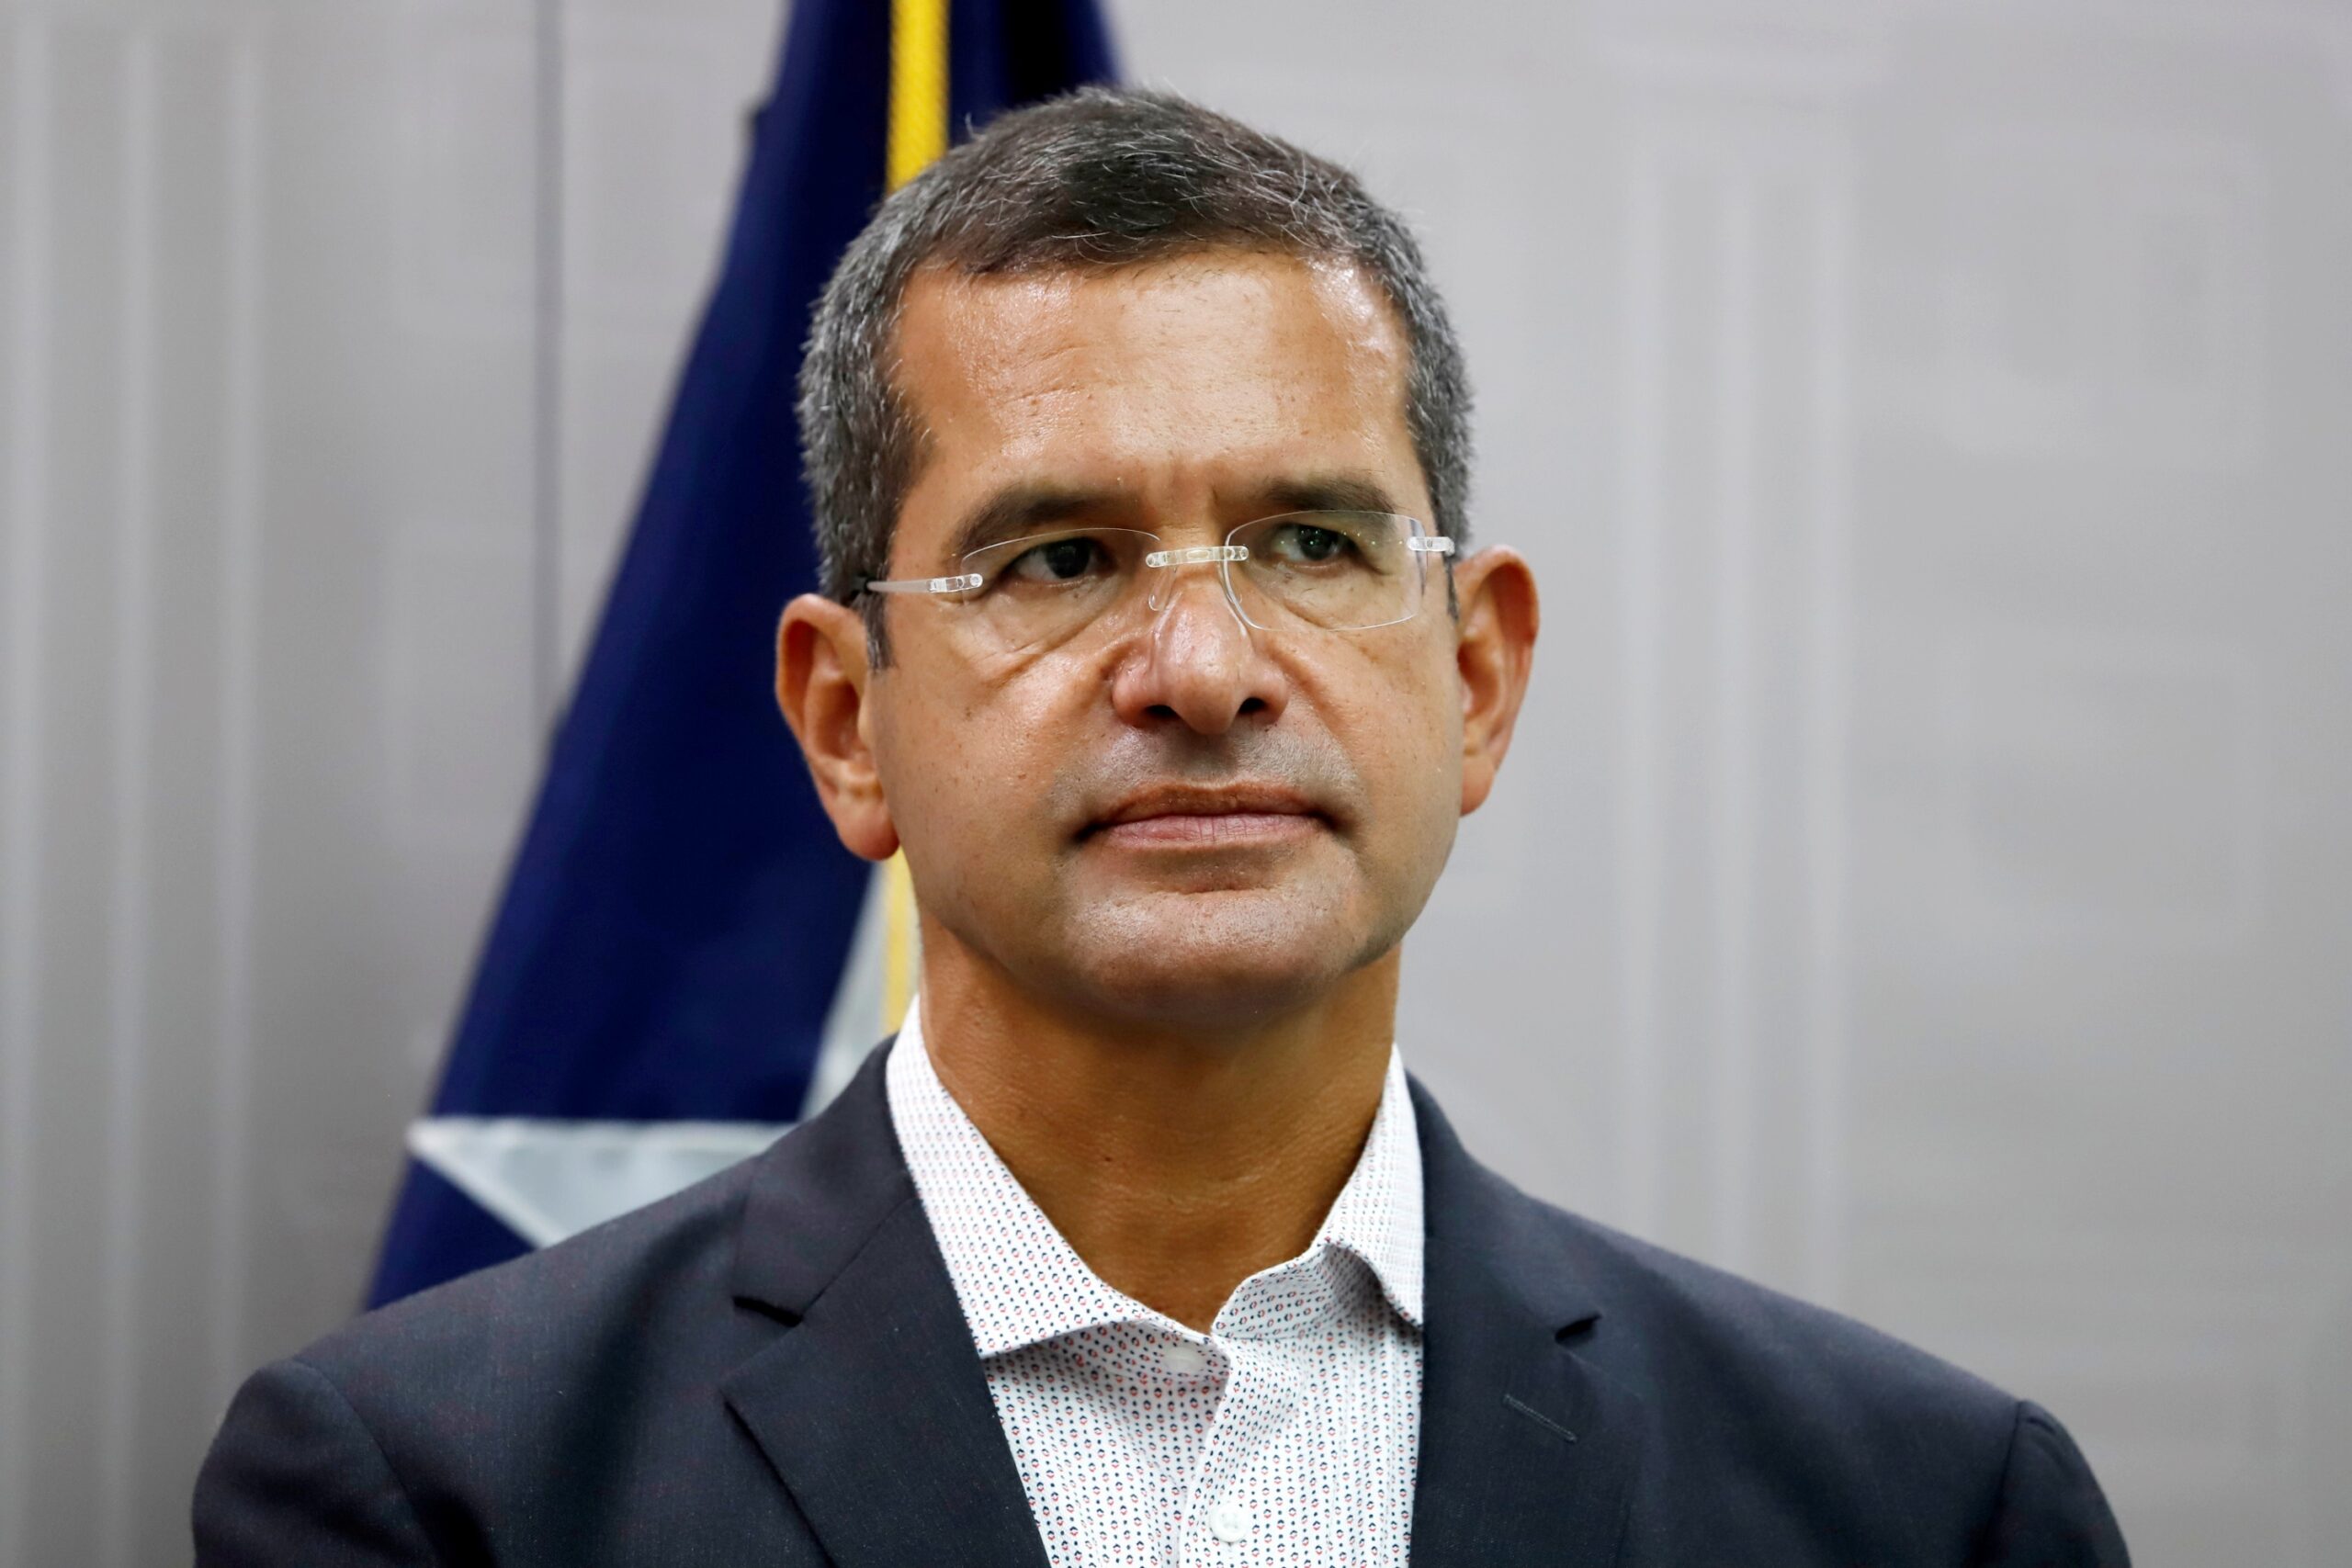 Puerto Rico ofrece cooperación a República Dominicana para investigar trama corrupta